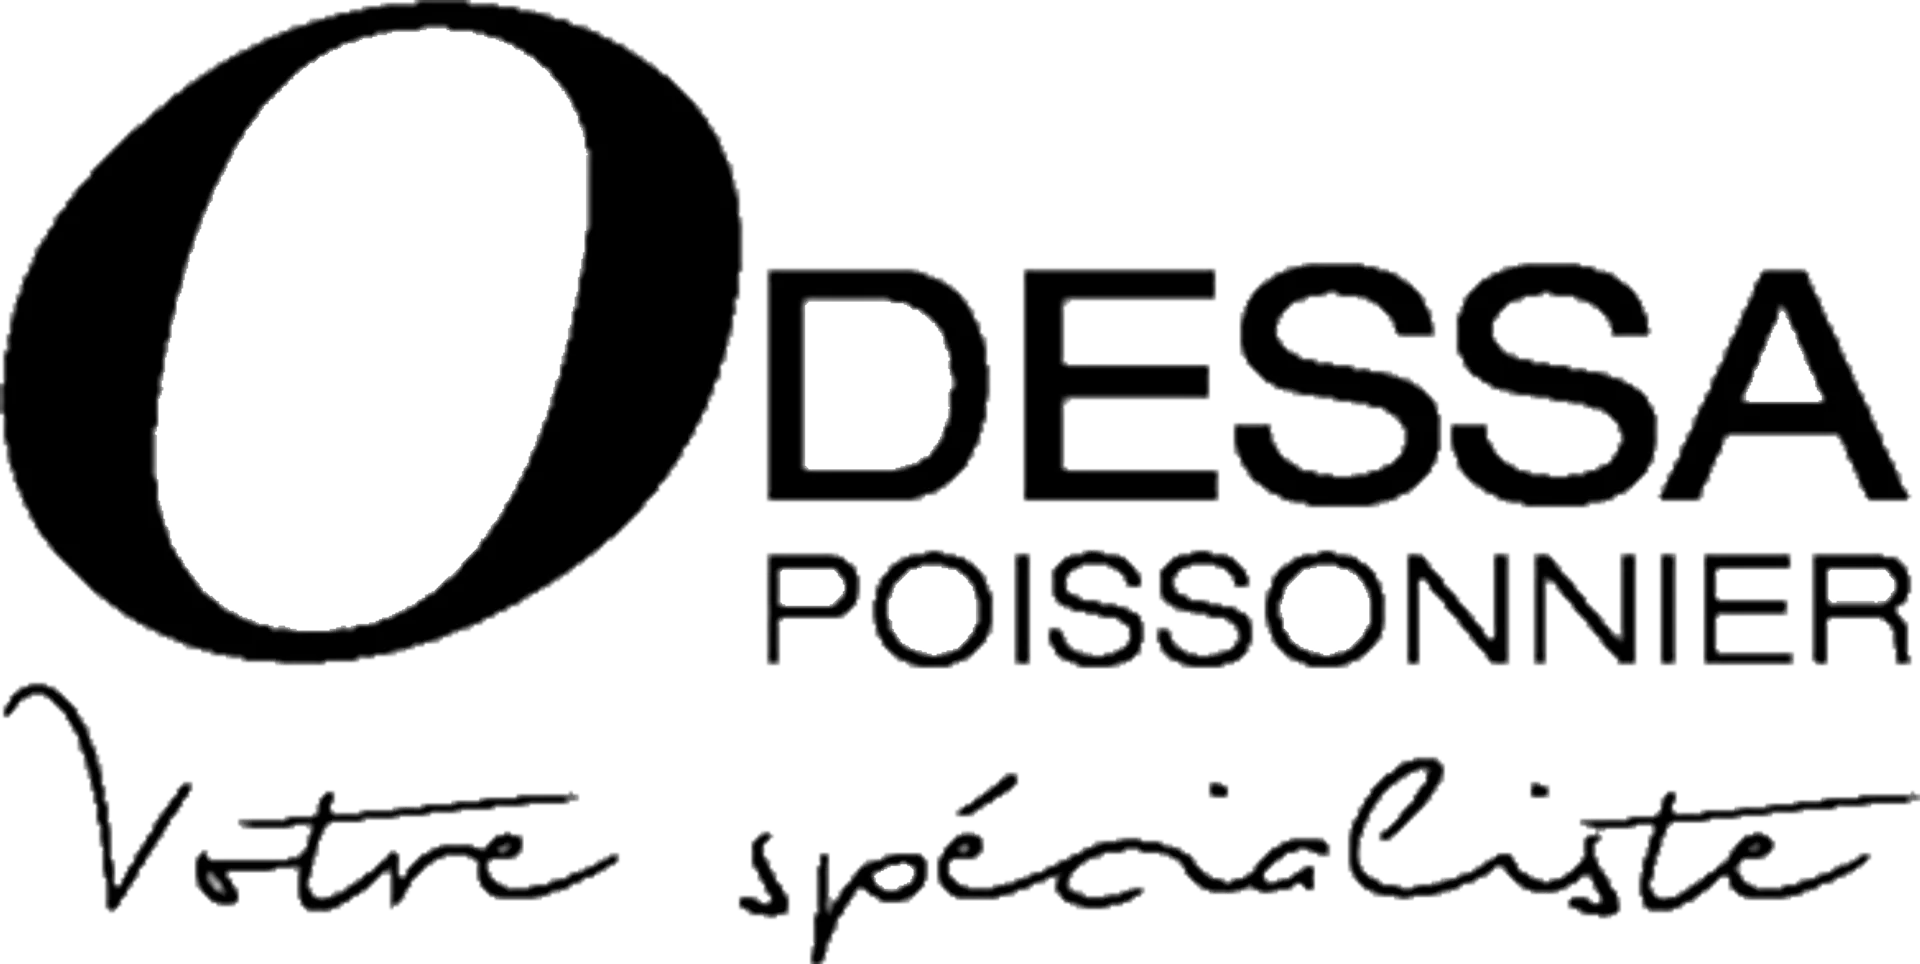 ODESSA POISSONNER logo de circulaires